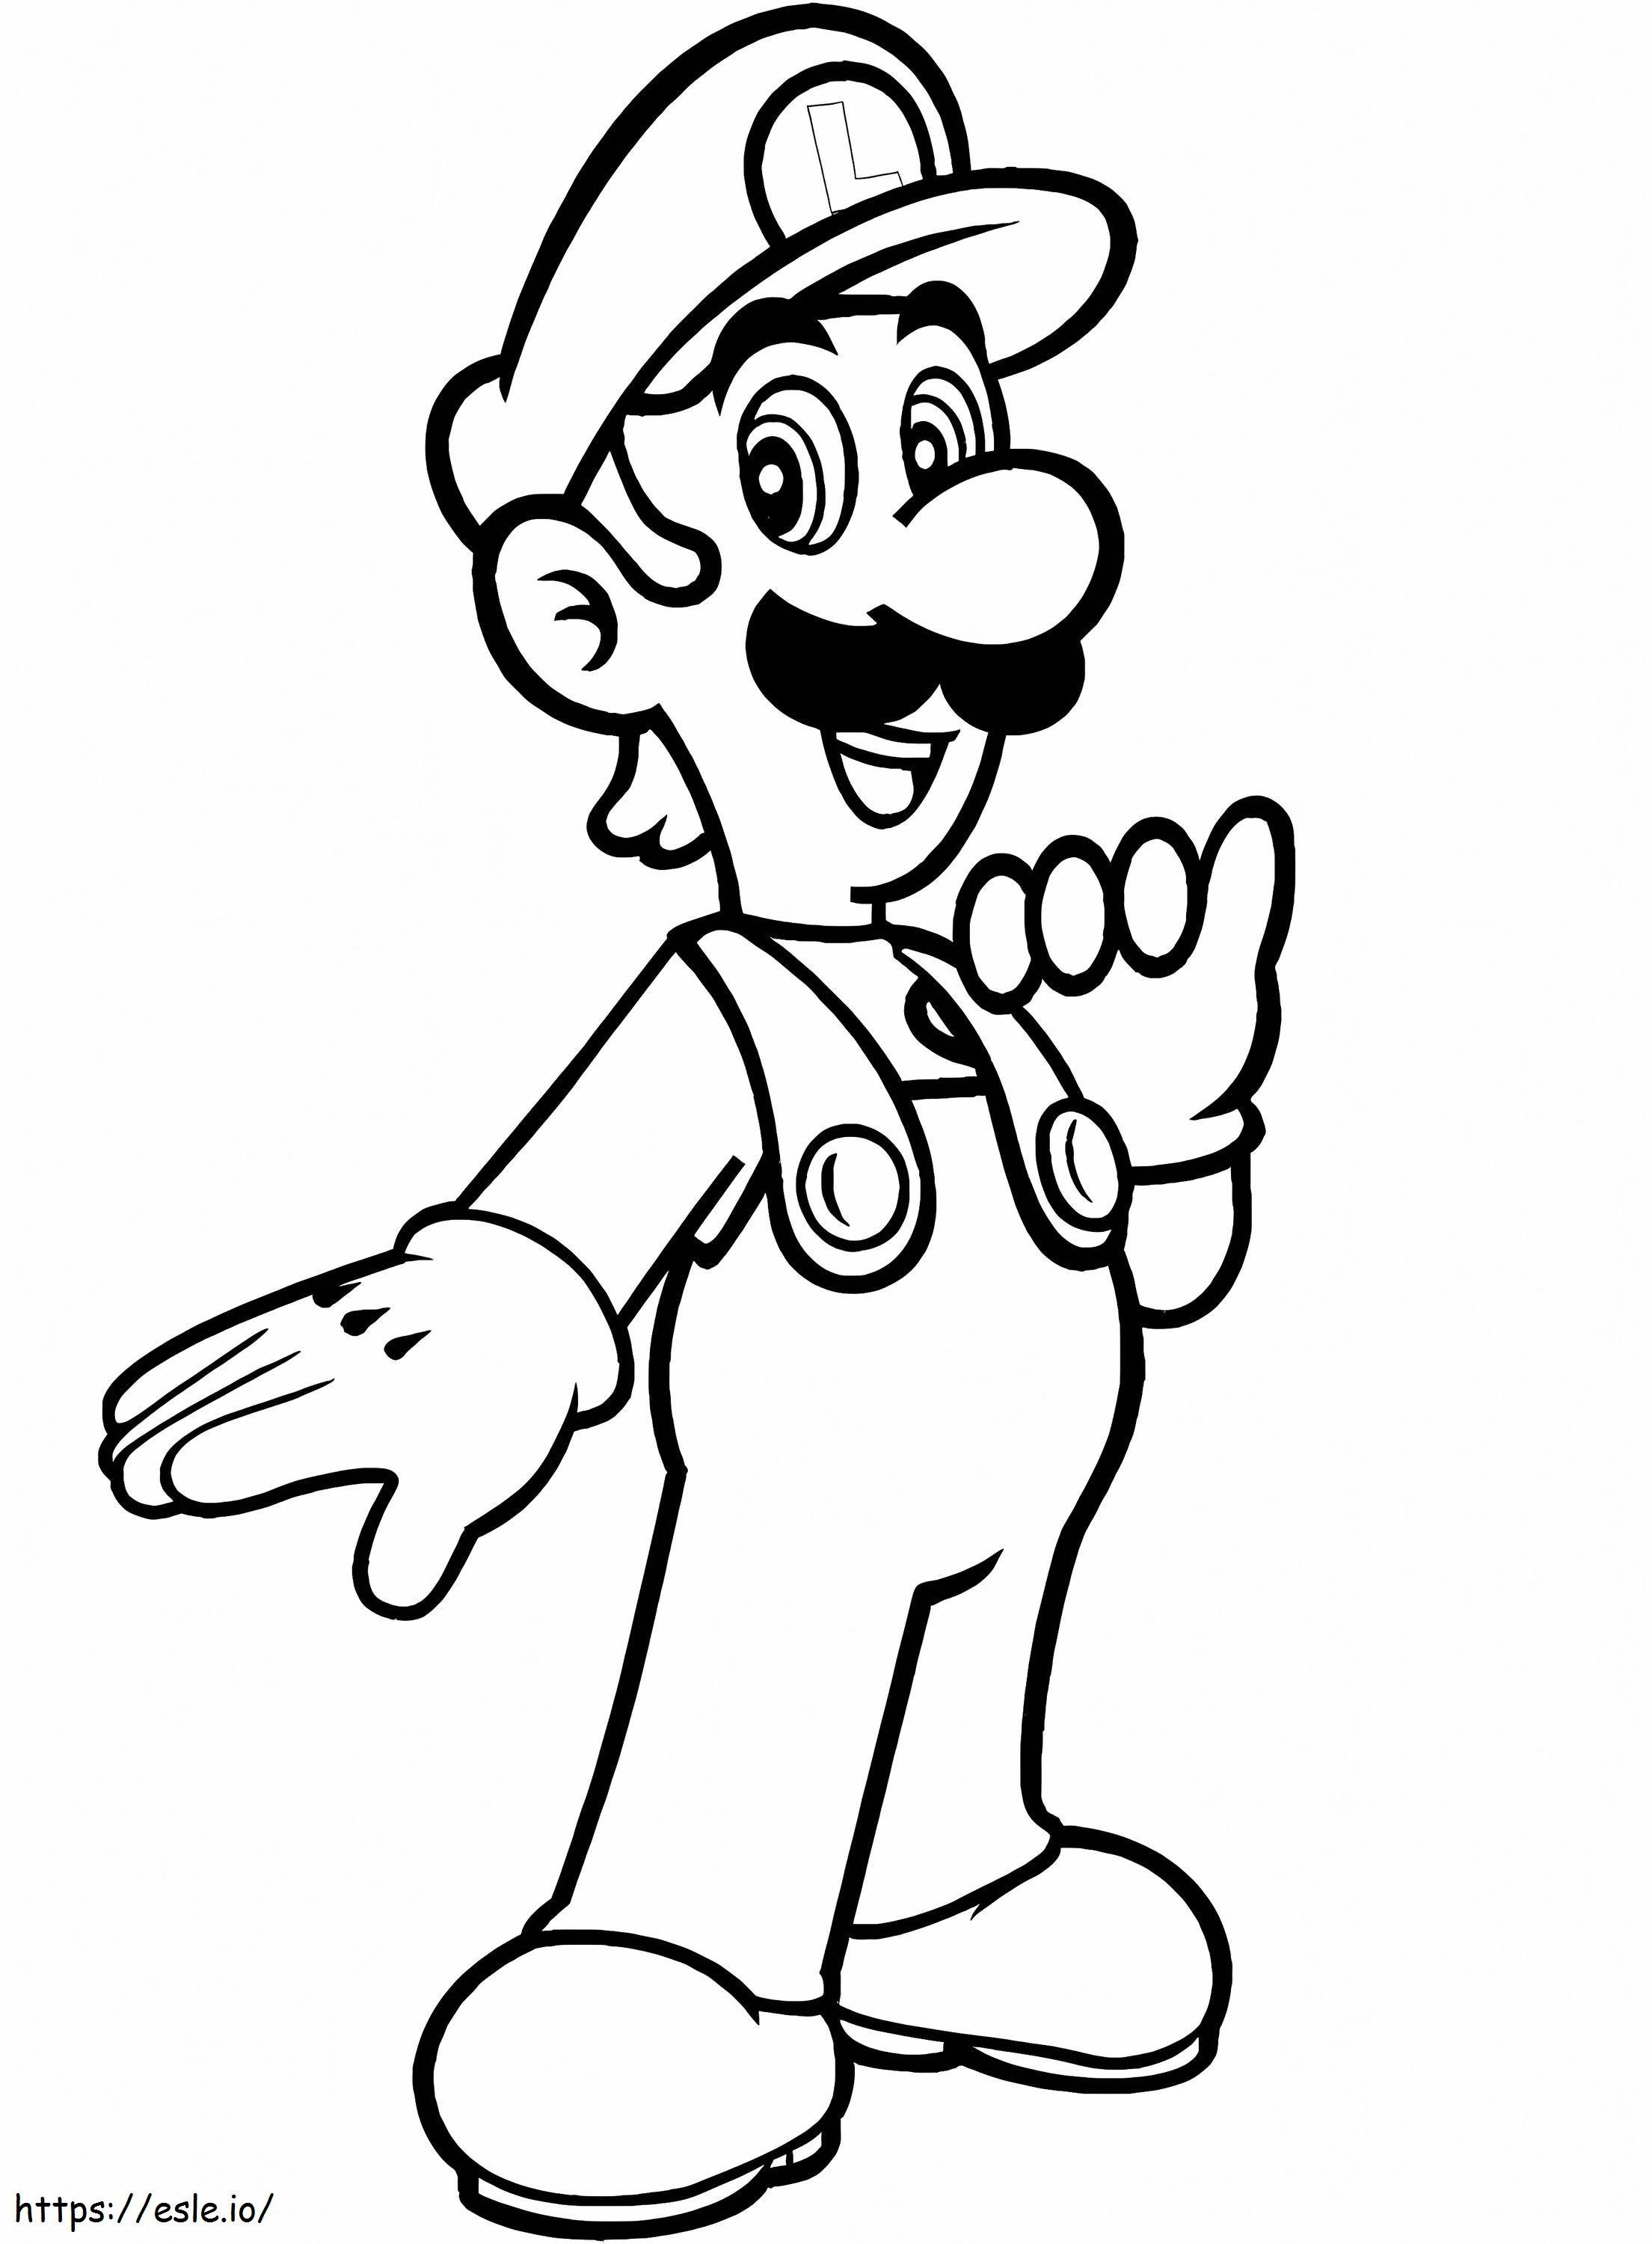 Luigi di Mario Bros. da colorare